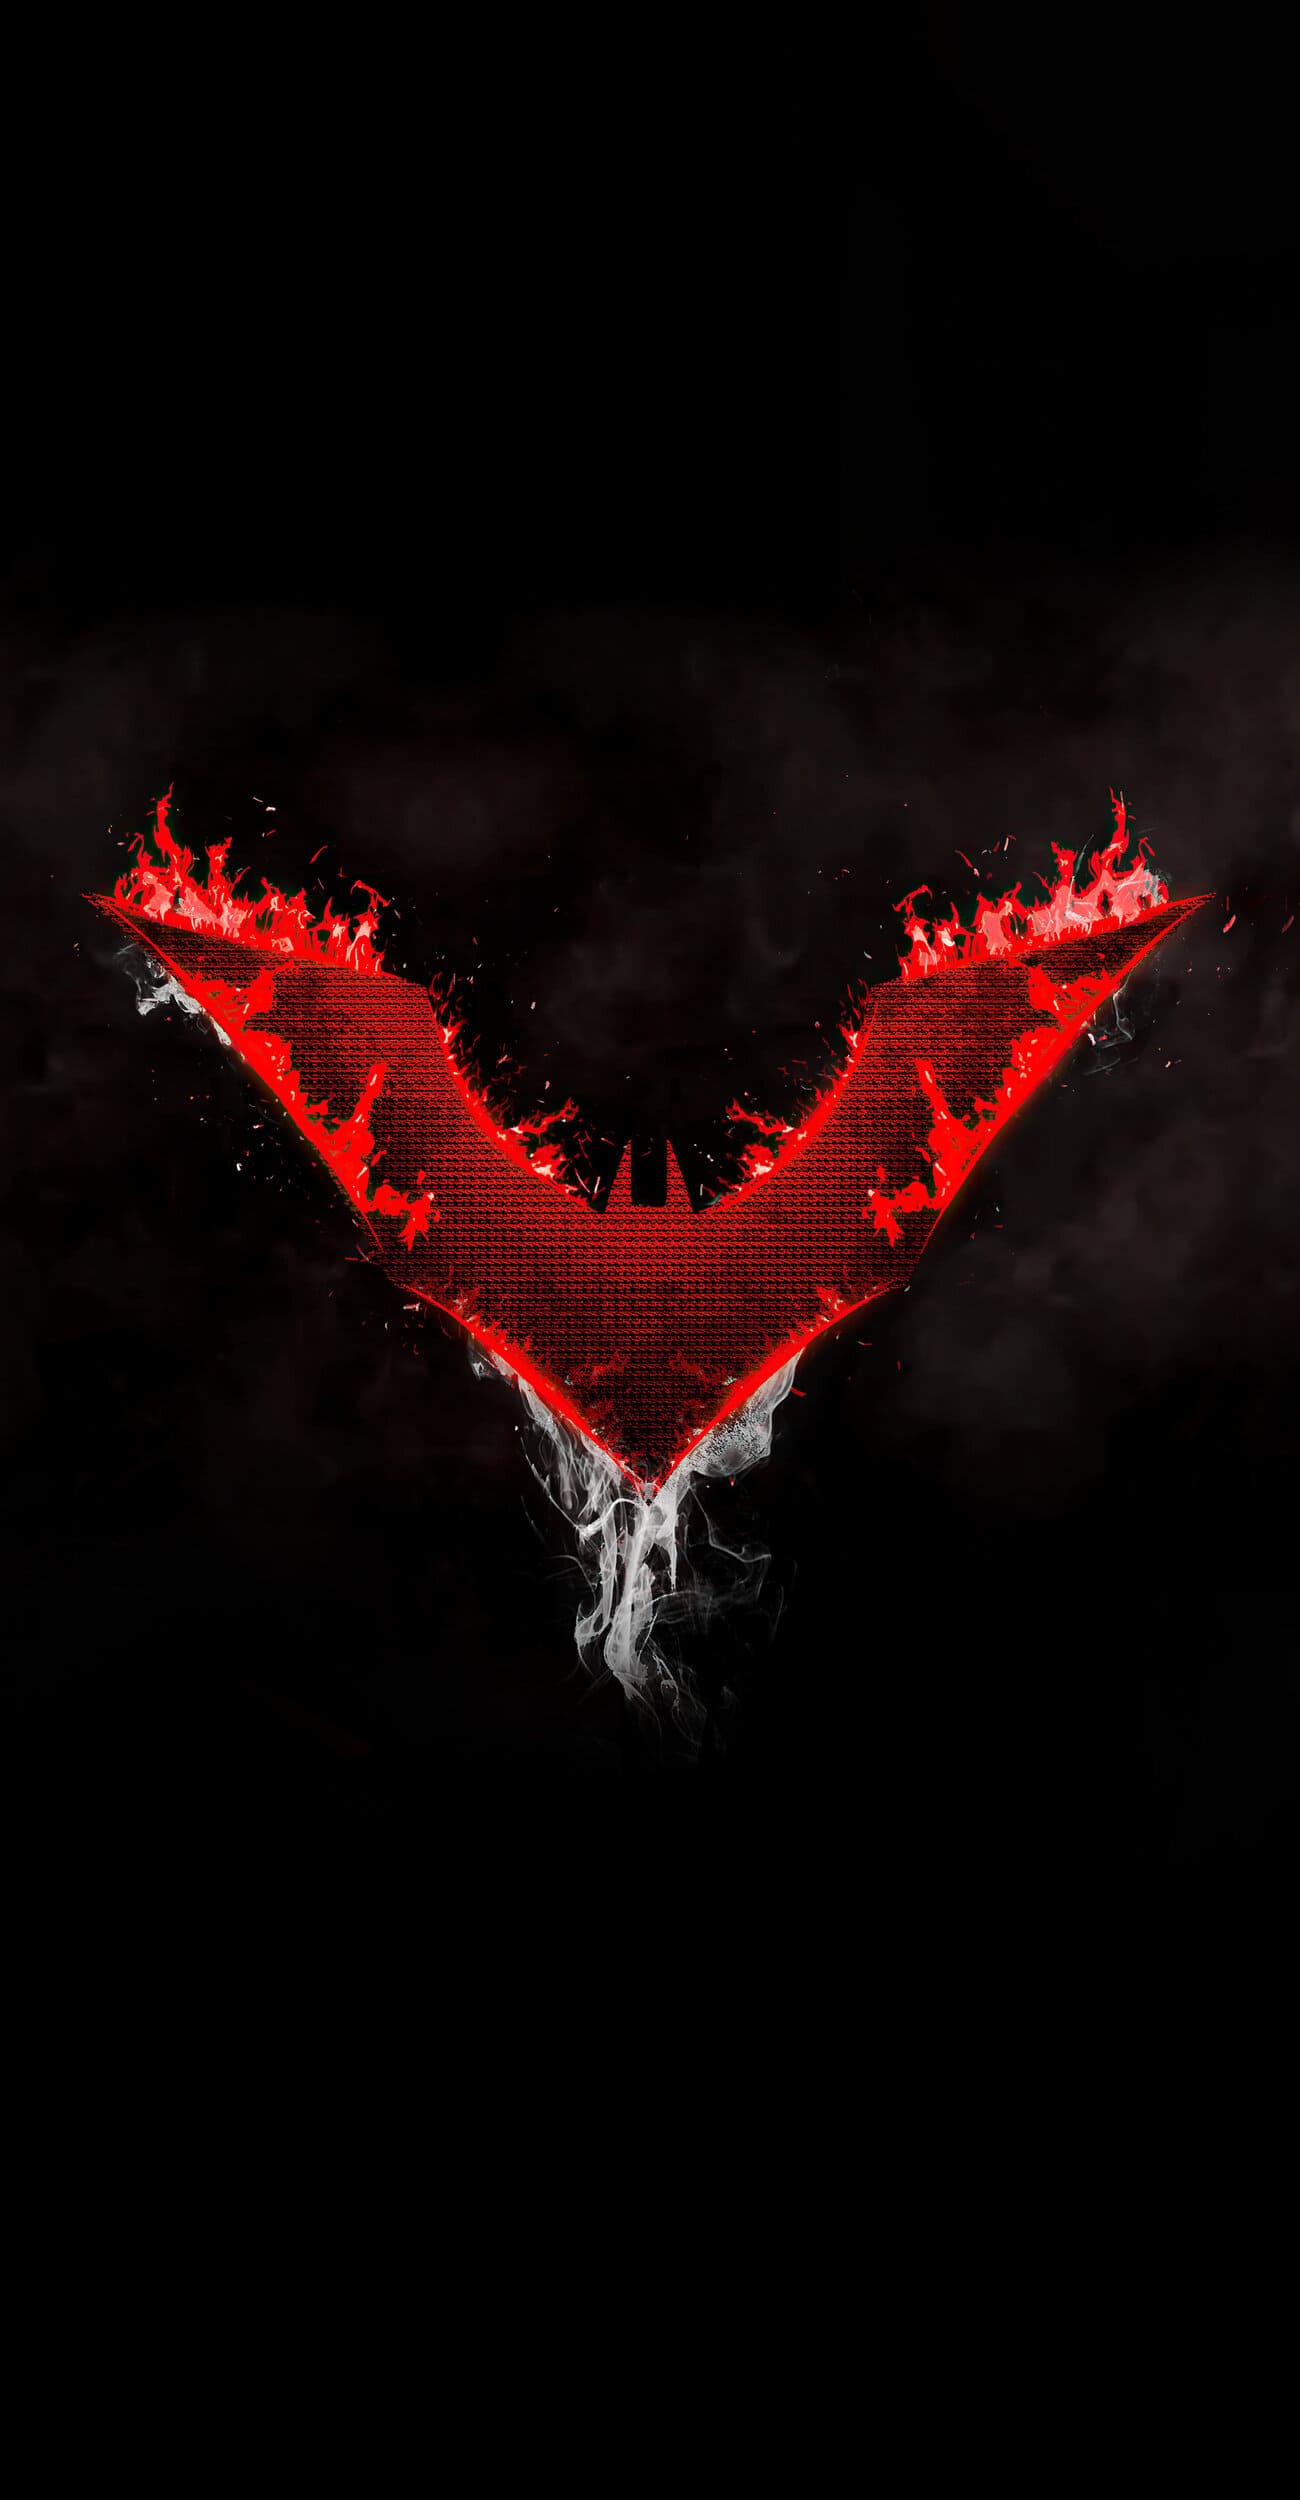 خلفية شعار باتمان احمر مع خلفية سوداء بدقة 4K للايفون